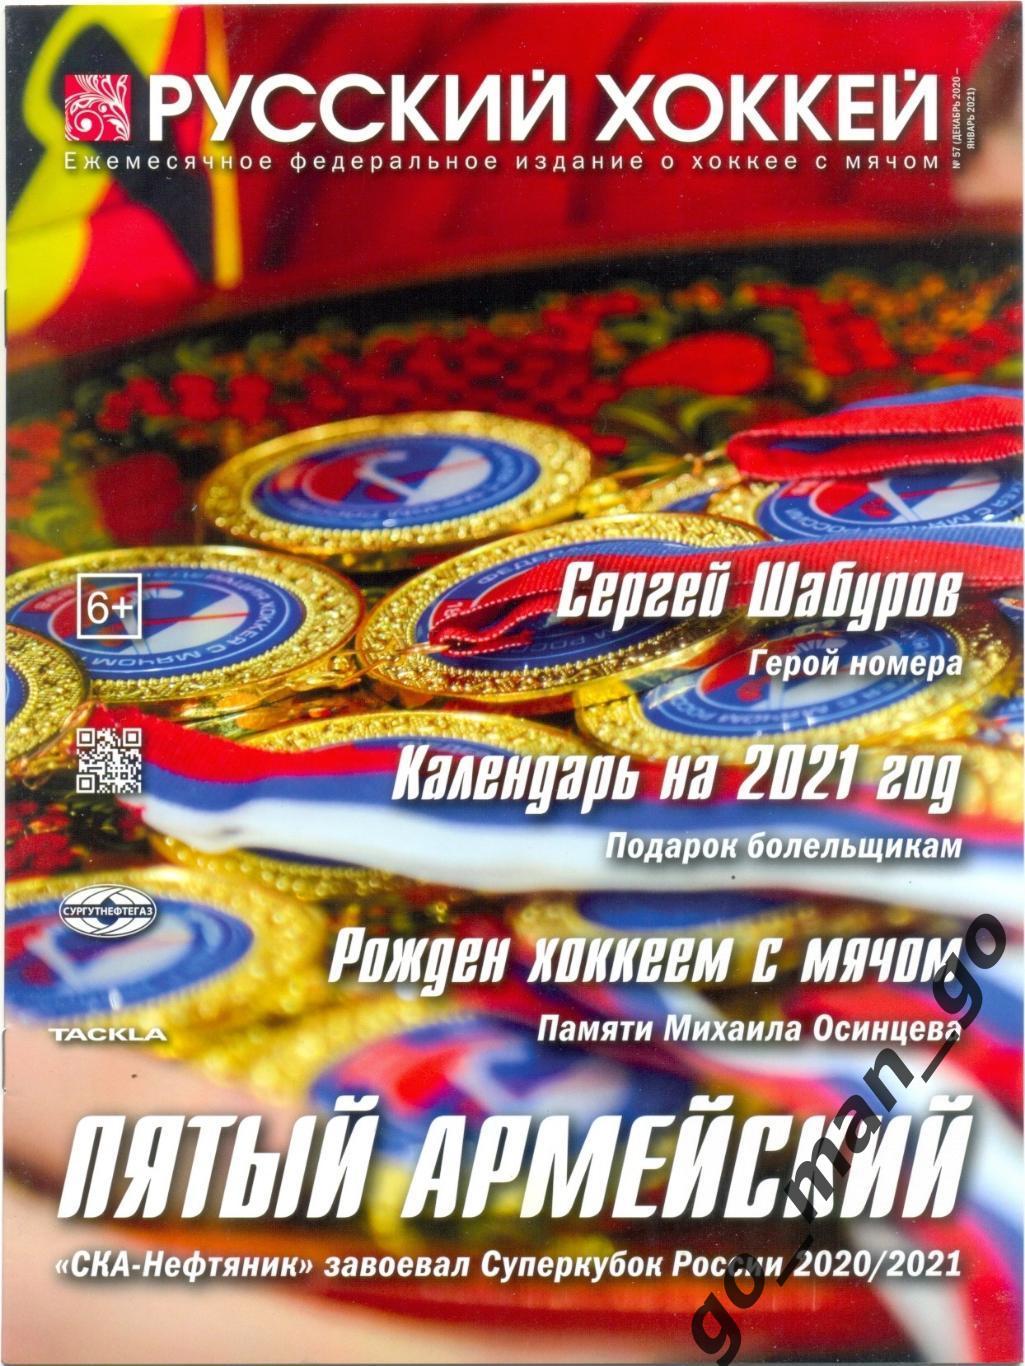 Журнал РУССКИЙ ХОККЕЙ № 57, декабрь 2020 – январь 2021.